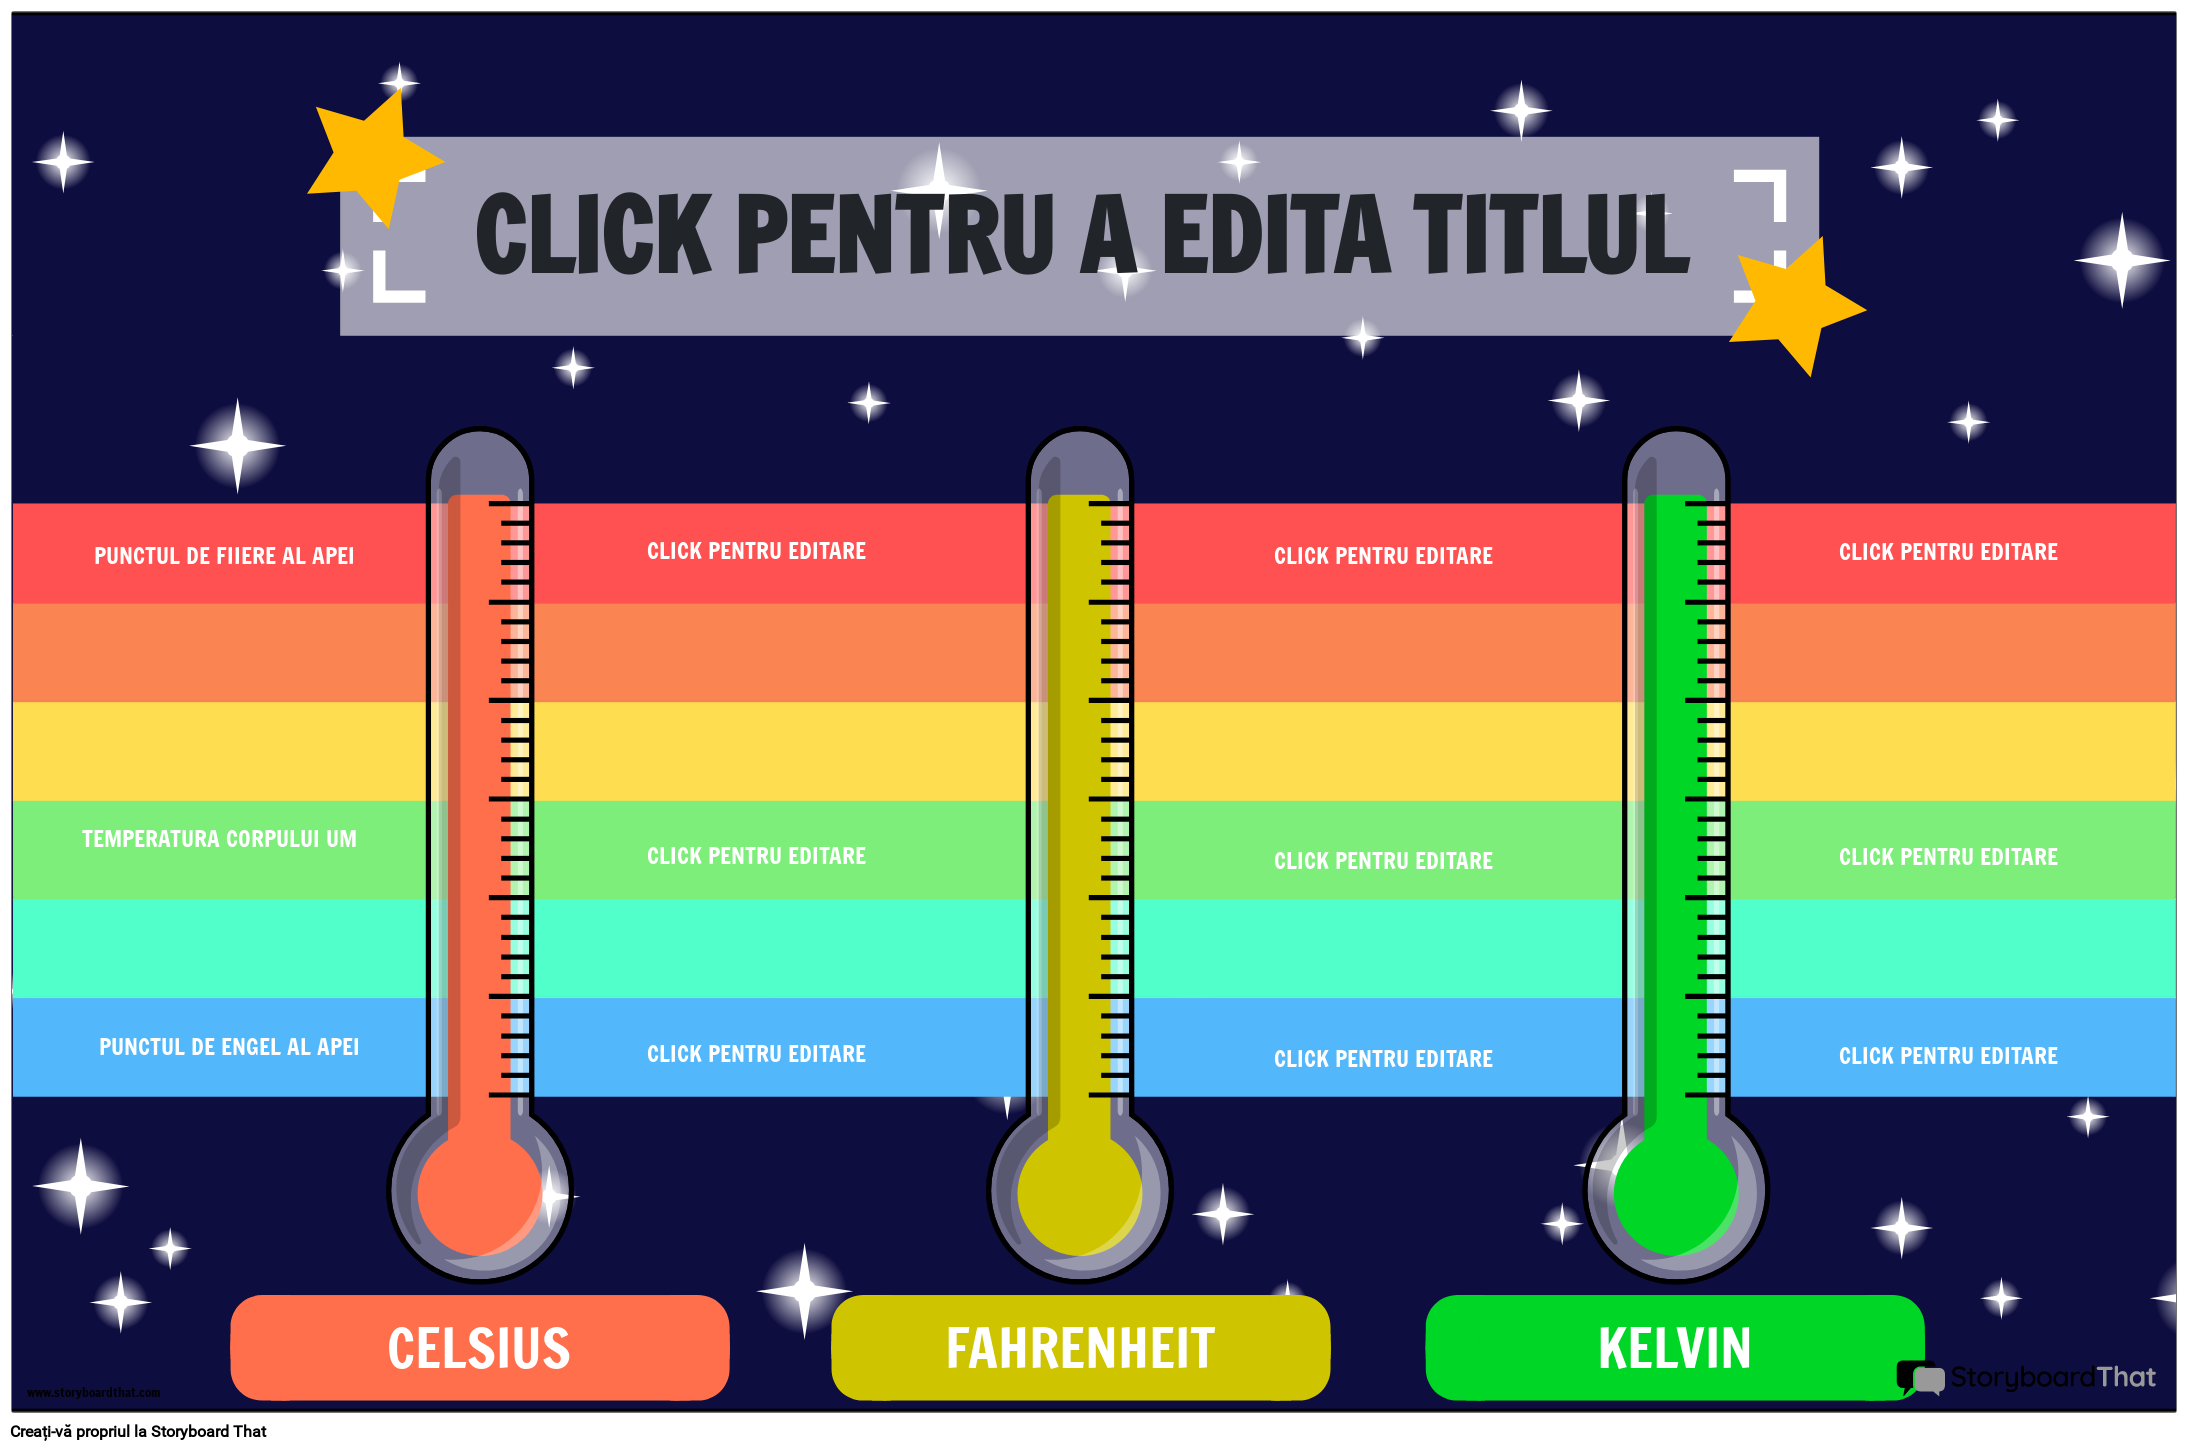 Poster de comparație a unităților de măsură de temperatură cu stele și curc